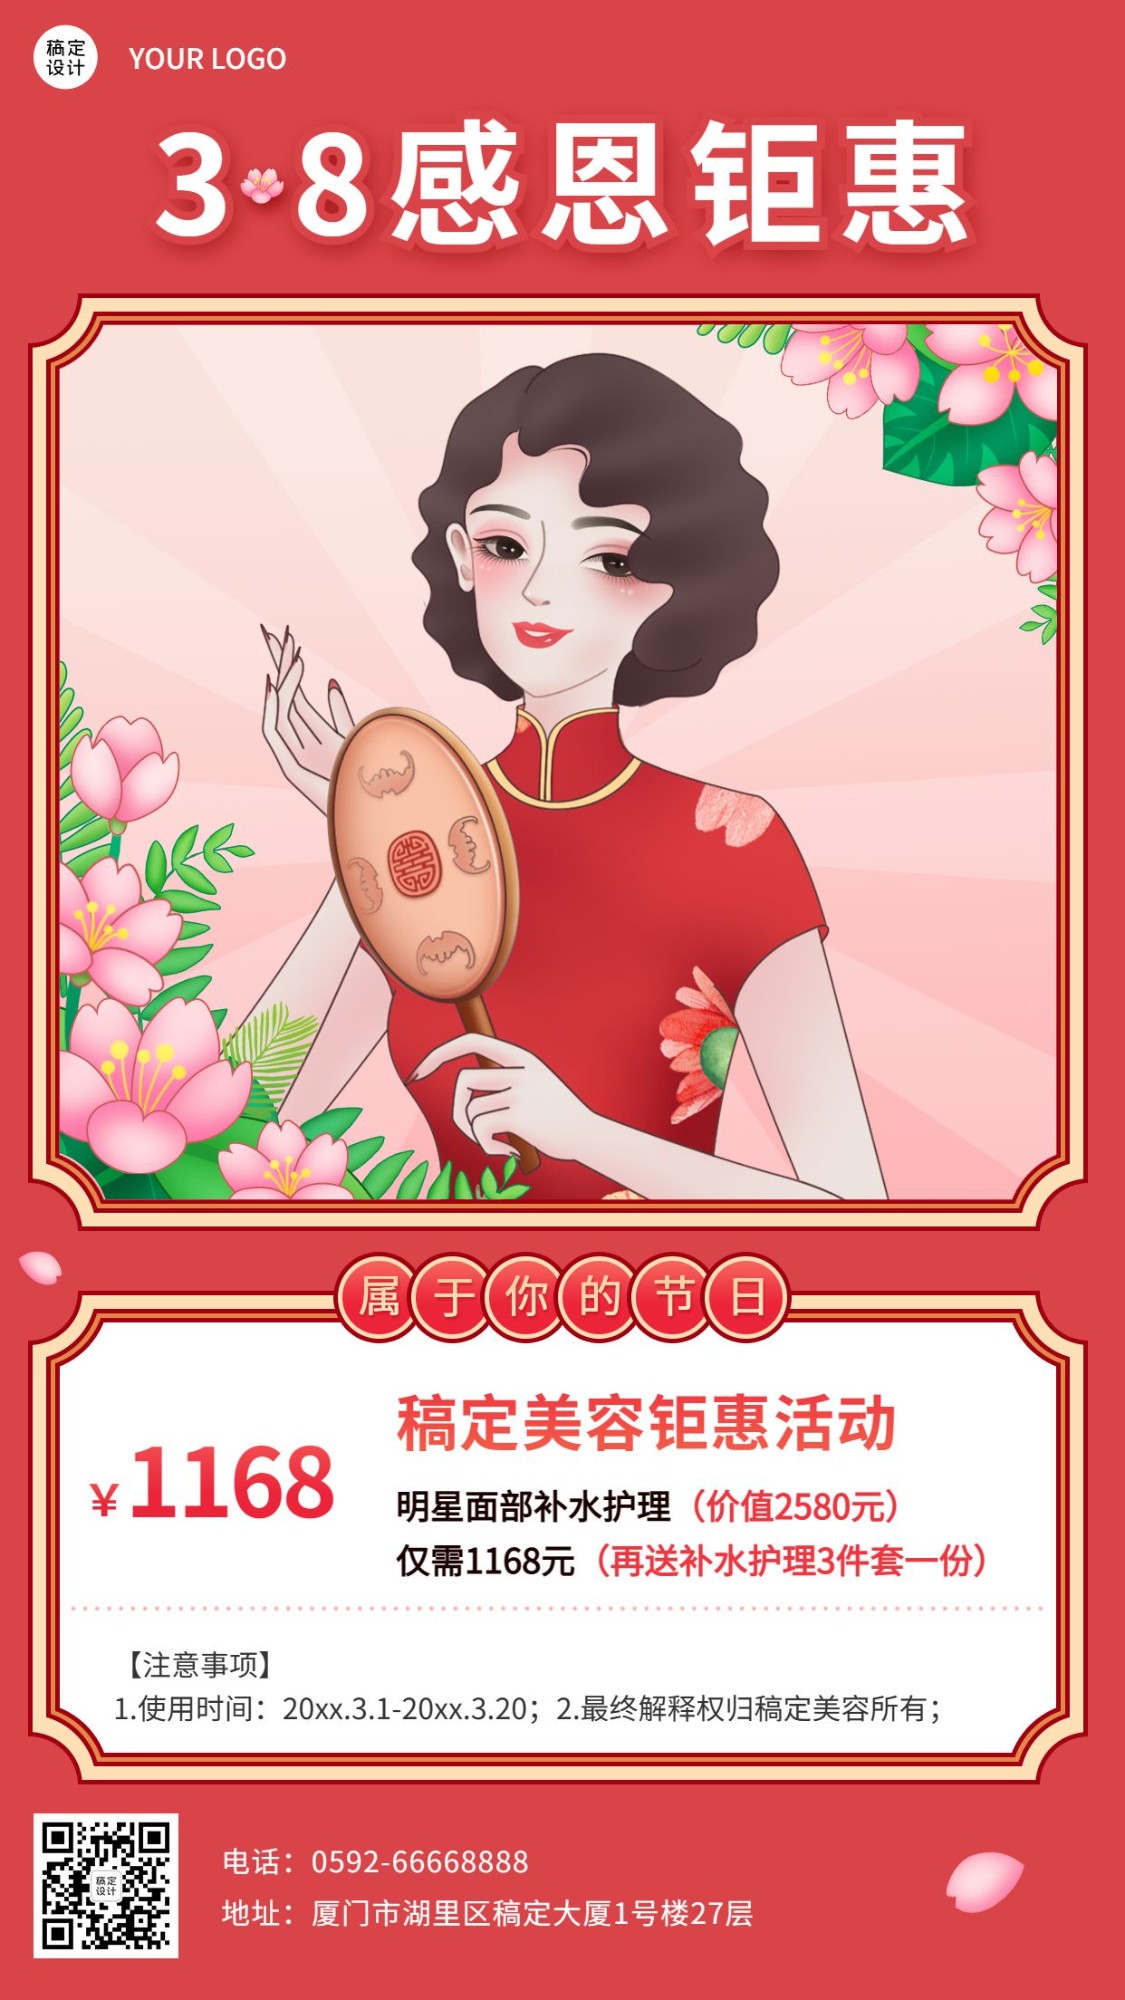 38妇女节节日营销插画手机海报